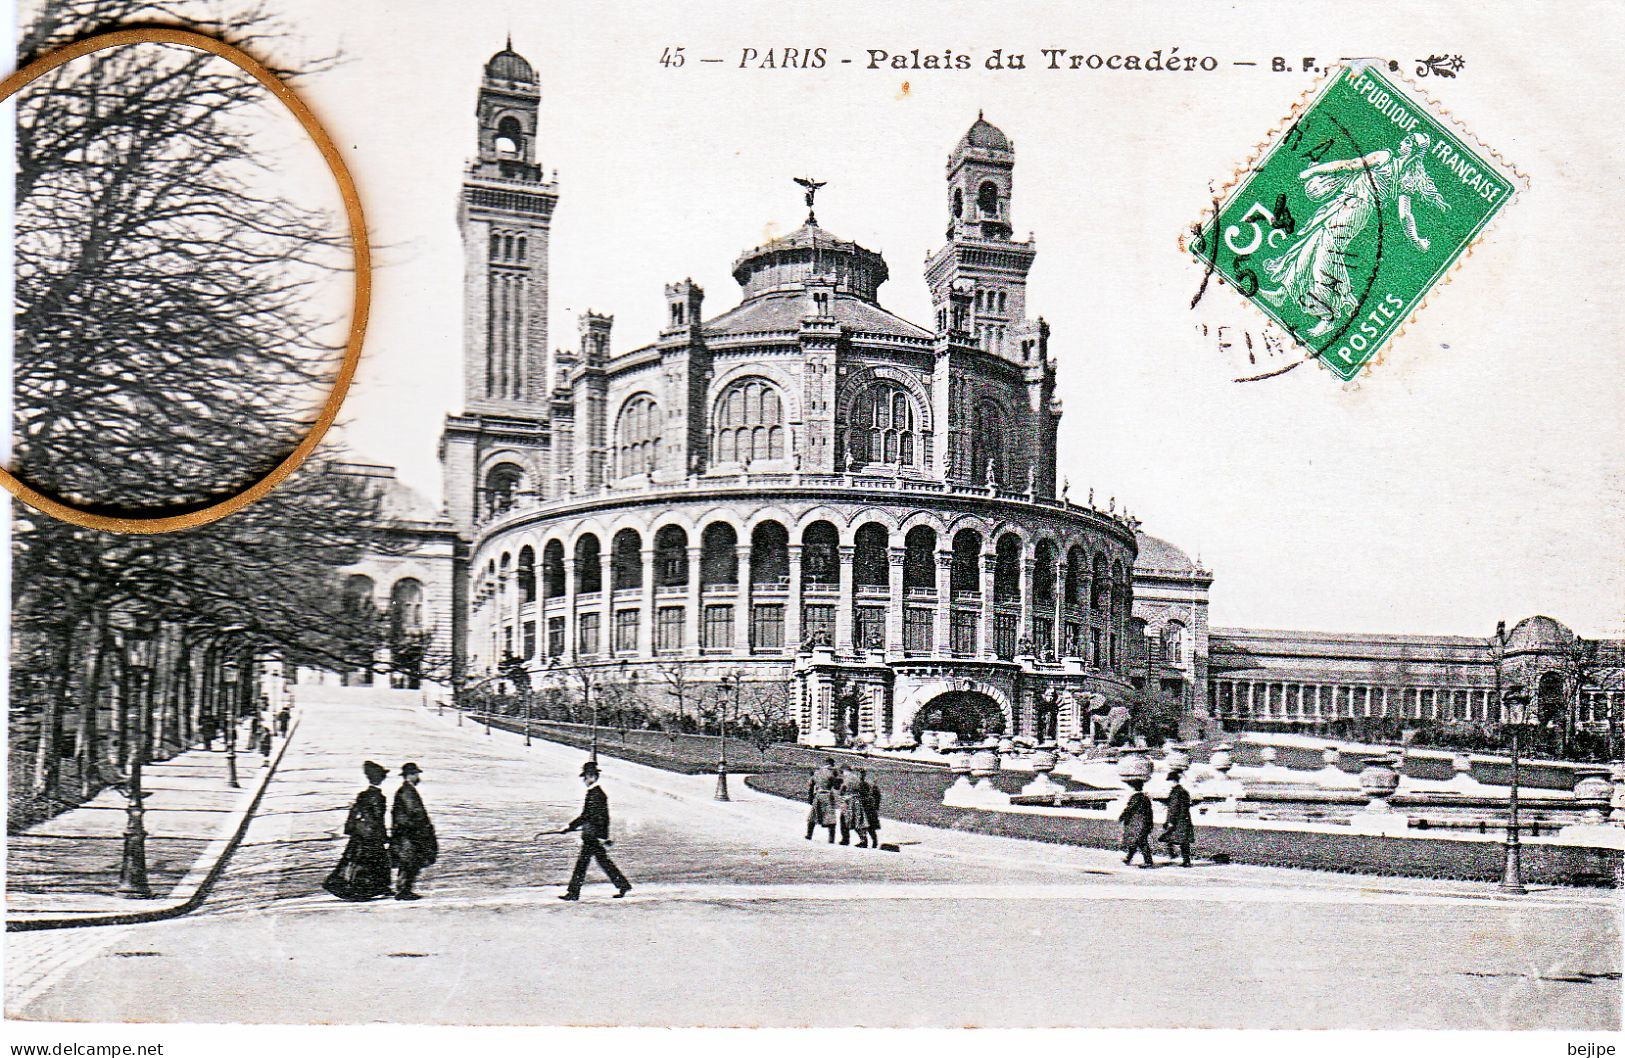 75 PARIS Palais Du Trocadero - Sonstige Sehenswürdigkeiten